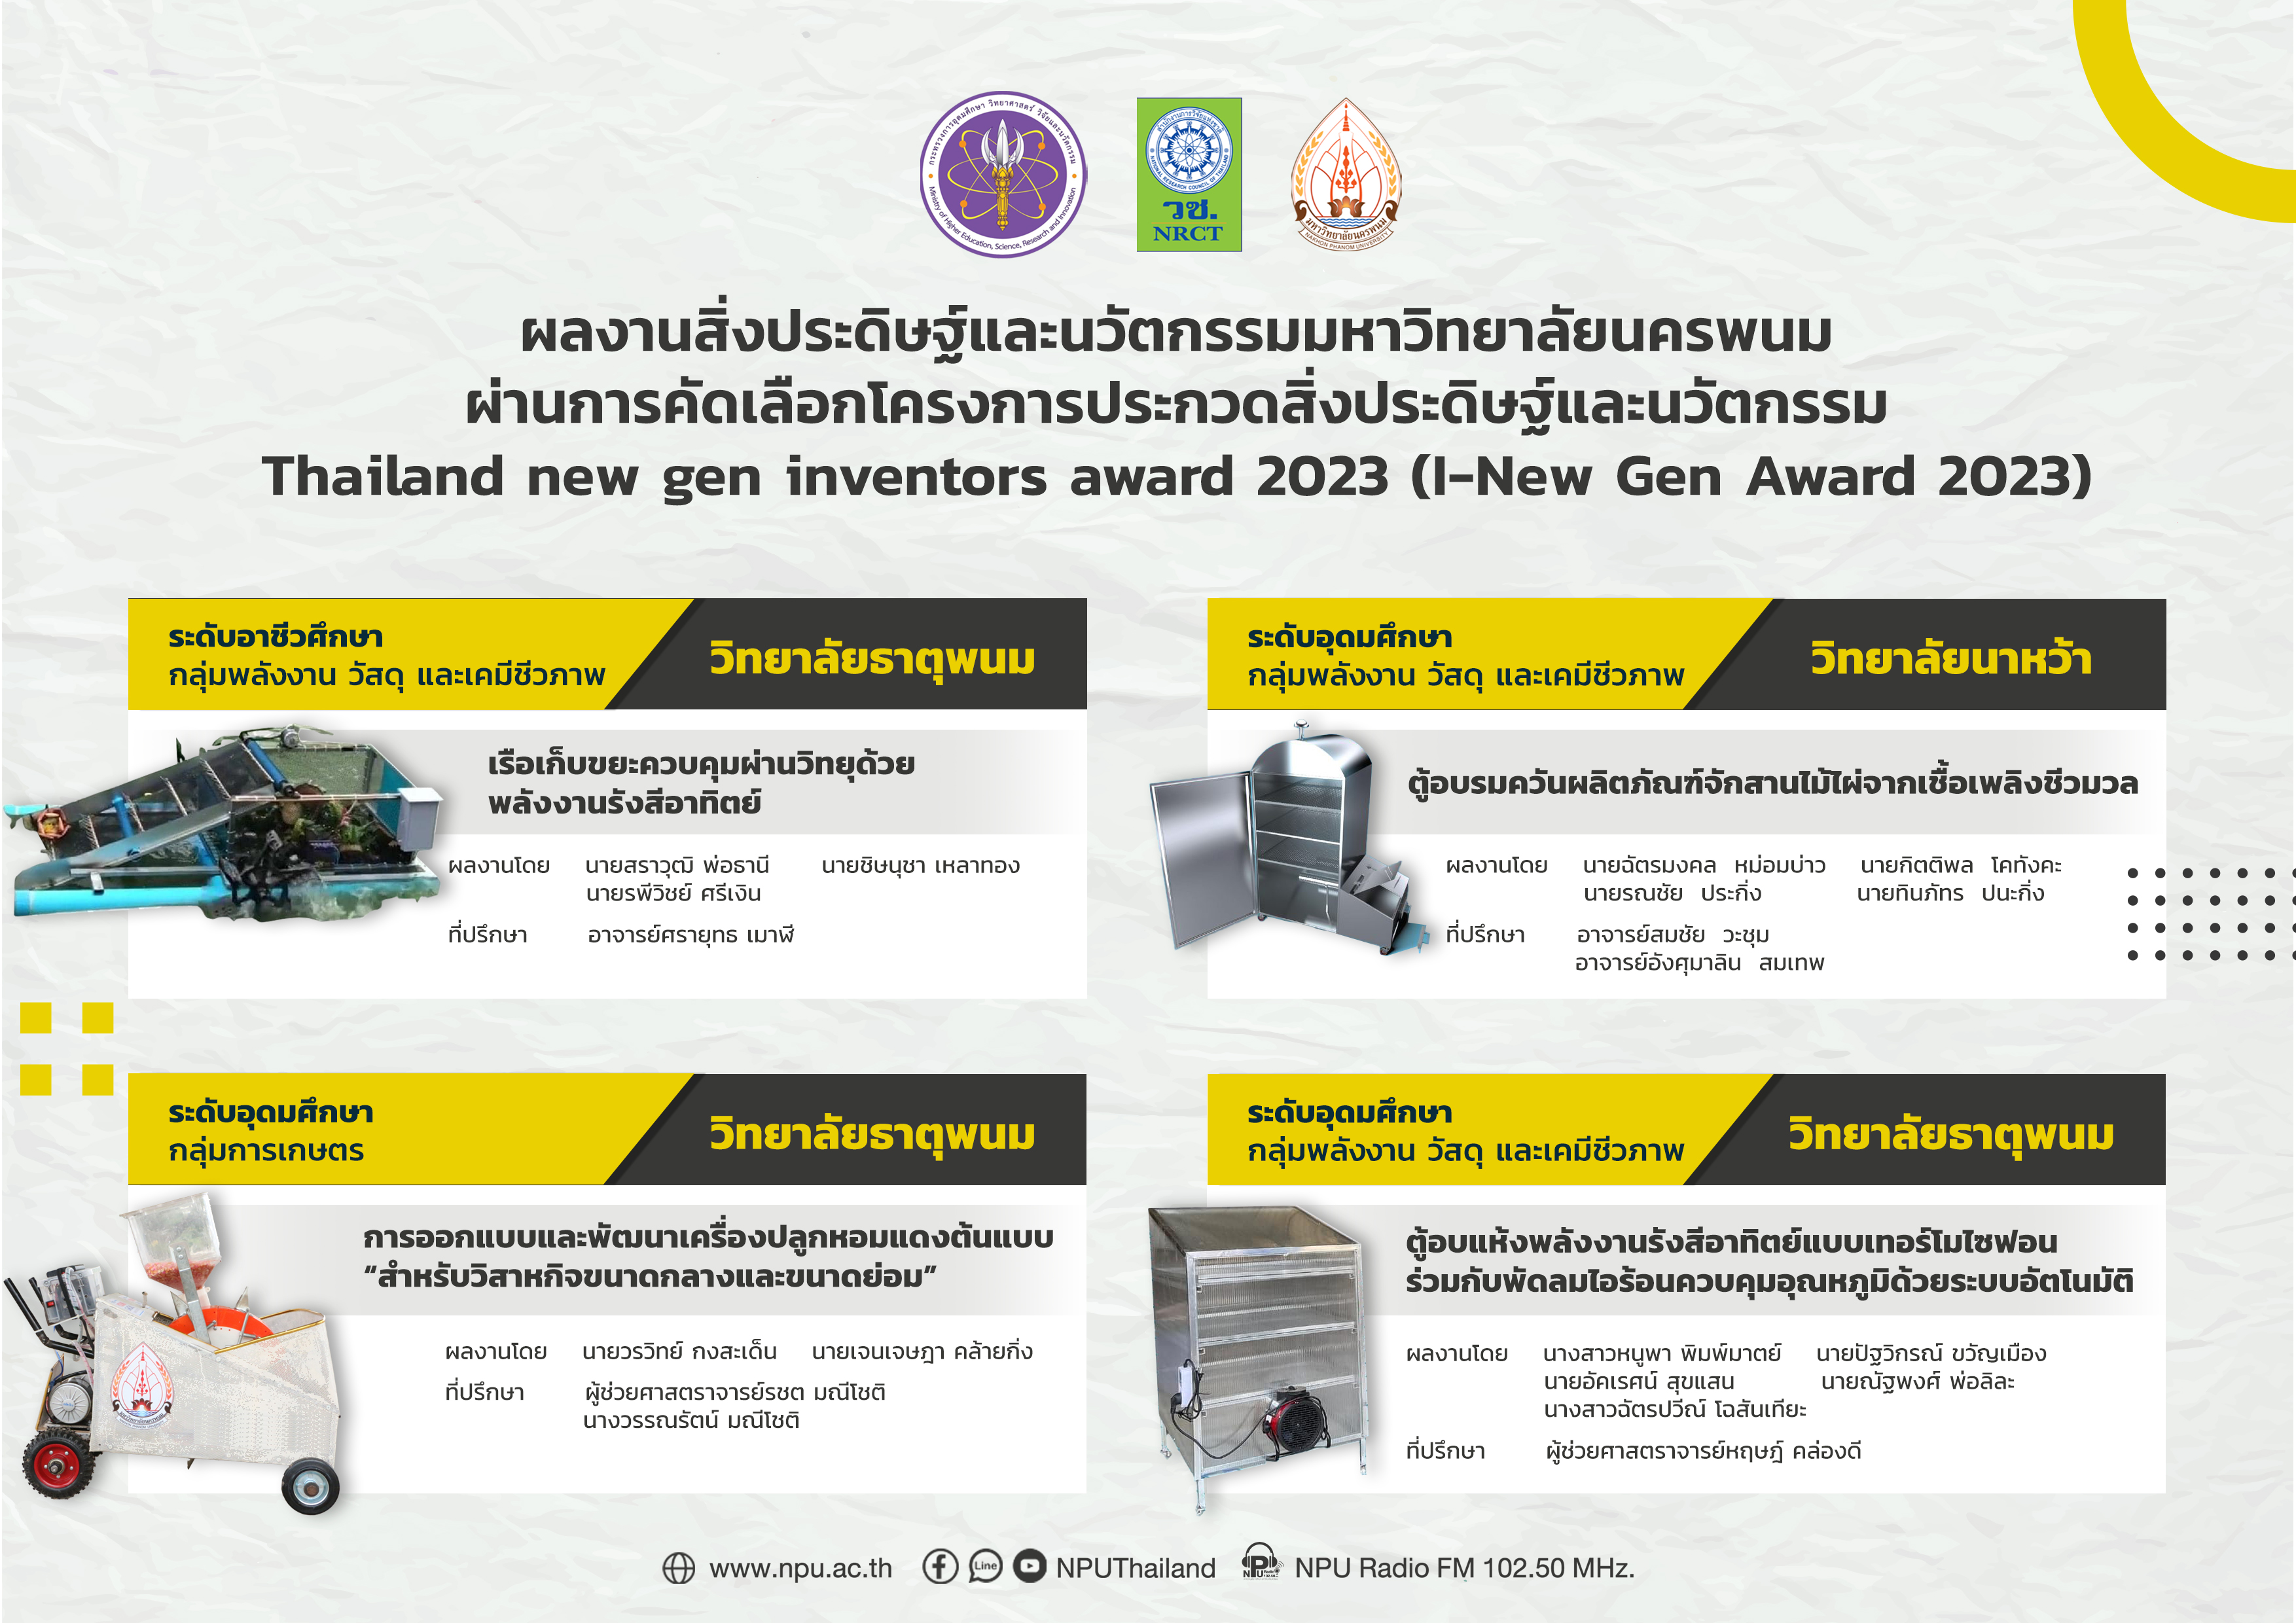 4 ผลงานสิ่งประดิษฐ์และนวัตกรรมมหาวิทยาลัยนครพนม ผ่านการคัดเลือกโครงการประกวดสิ่งประดิษฐ์และนวัตกรรม Thailand new gen inventors award 2023